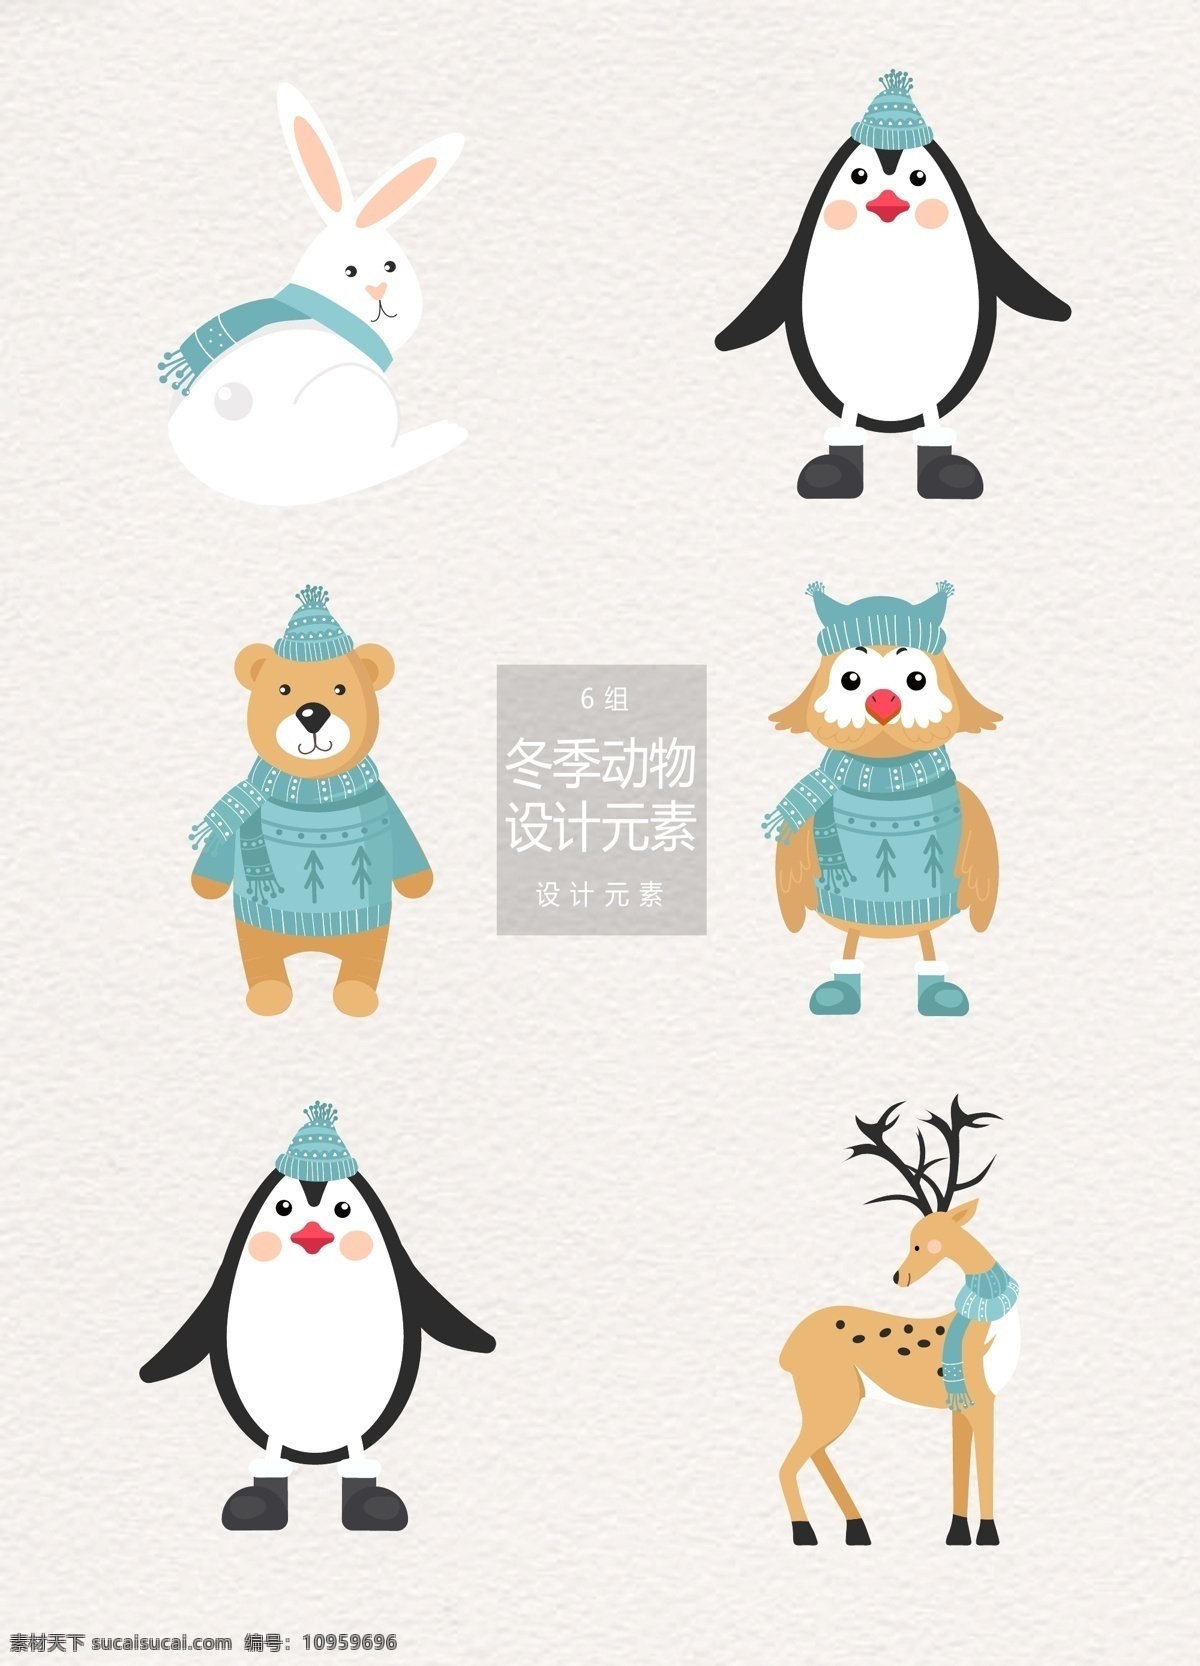 冬季 卡通 动物 元素 卡通动物 冬天 兔子 企鹅 狗熊 小熊 猫头鹰 麋鹿 驯鹿